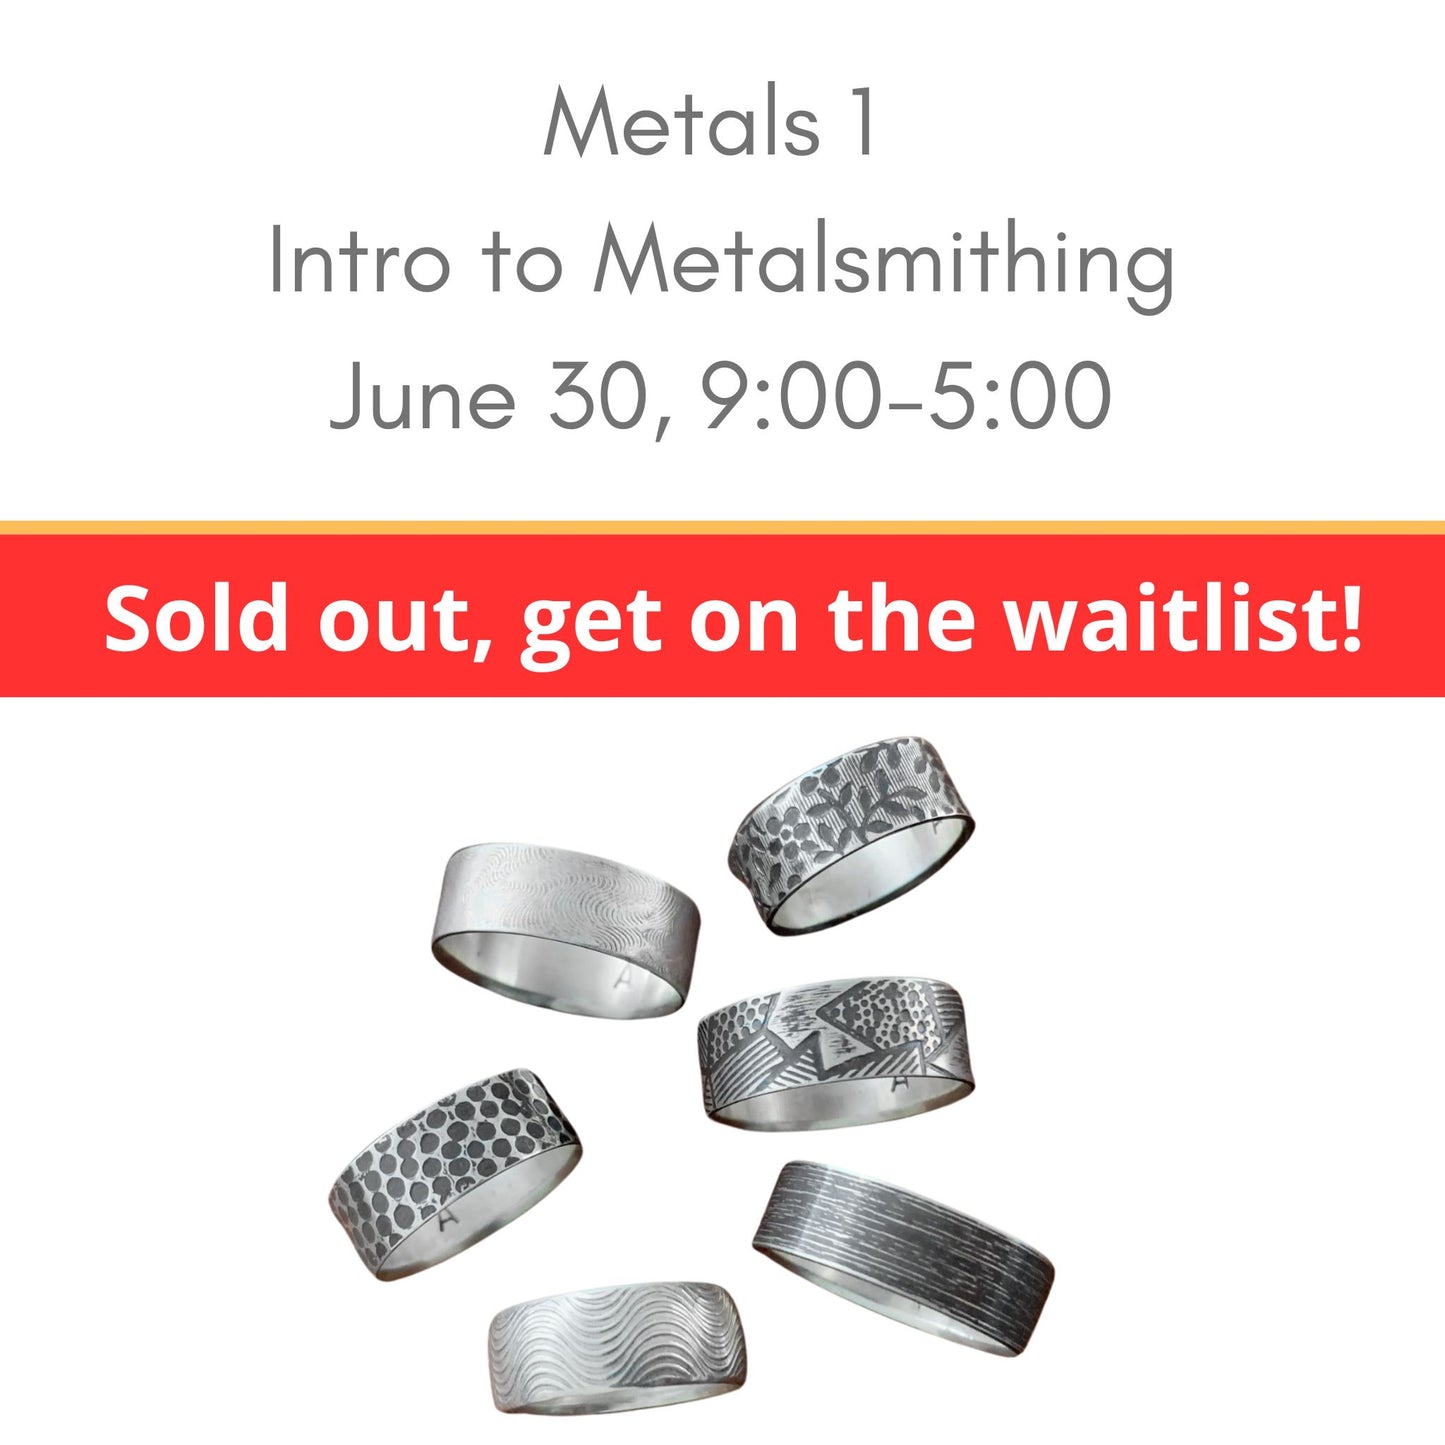 Intro to Metalsmithing June 30 at Silver Peak Studio